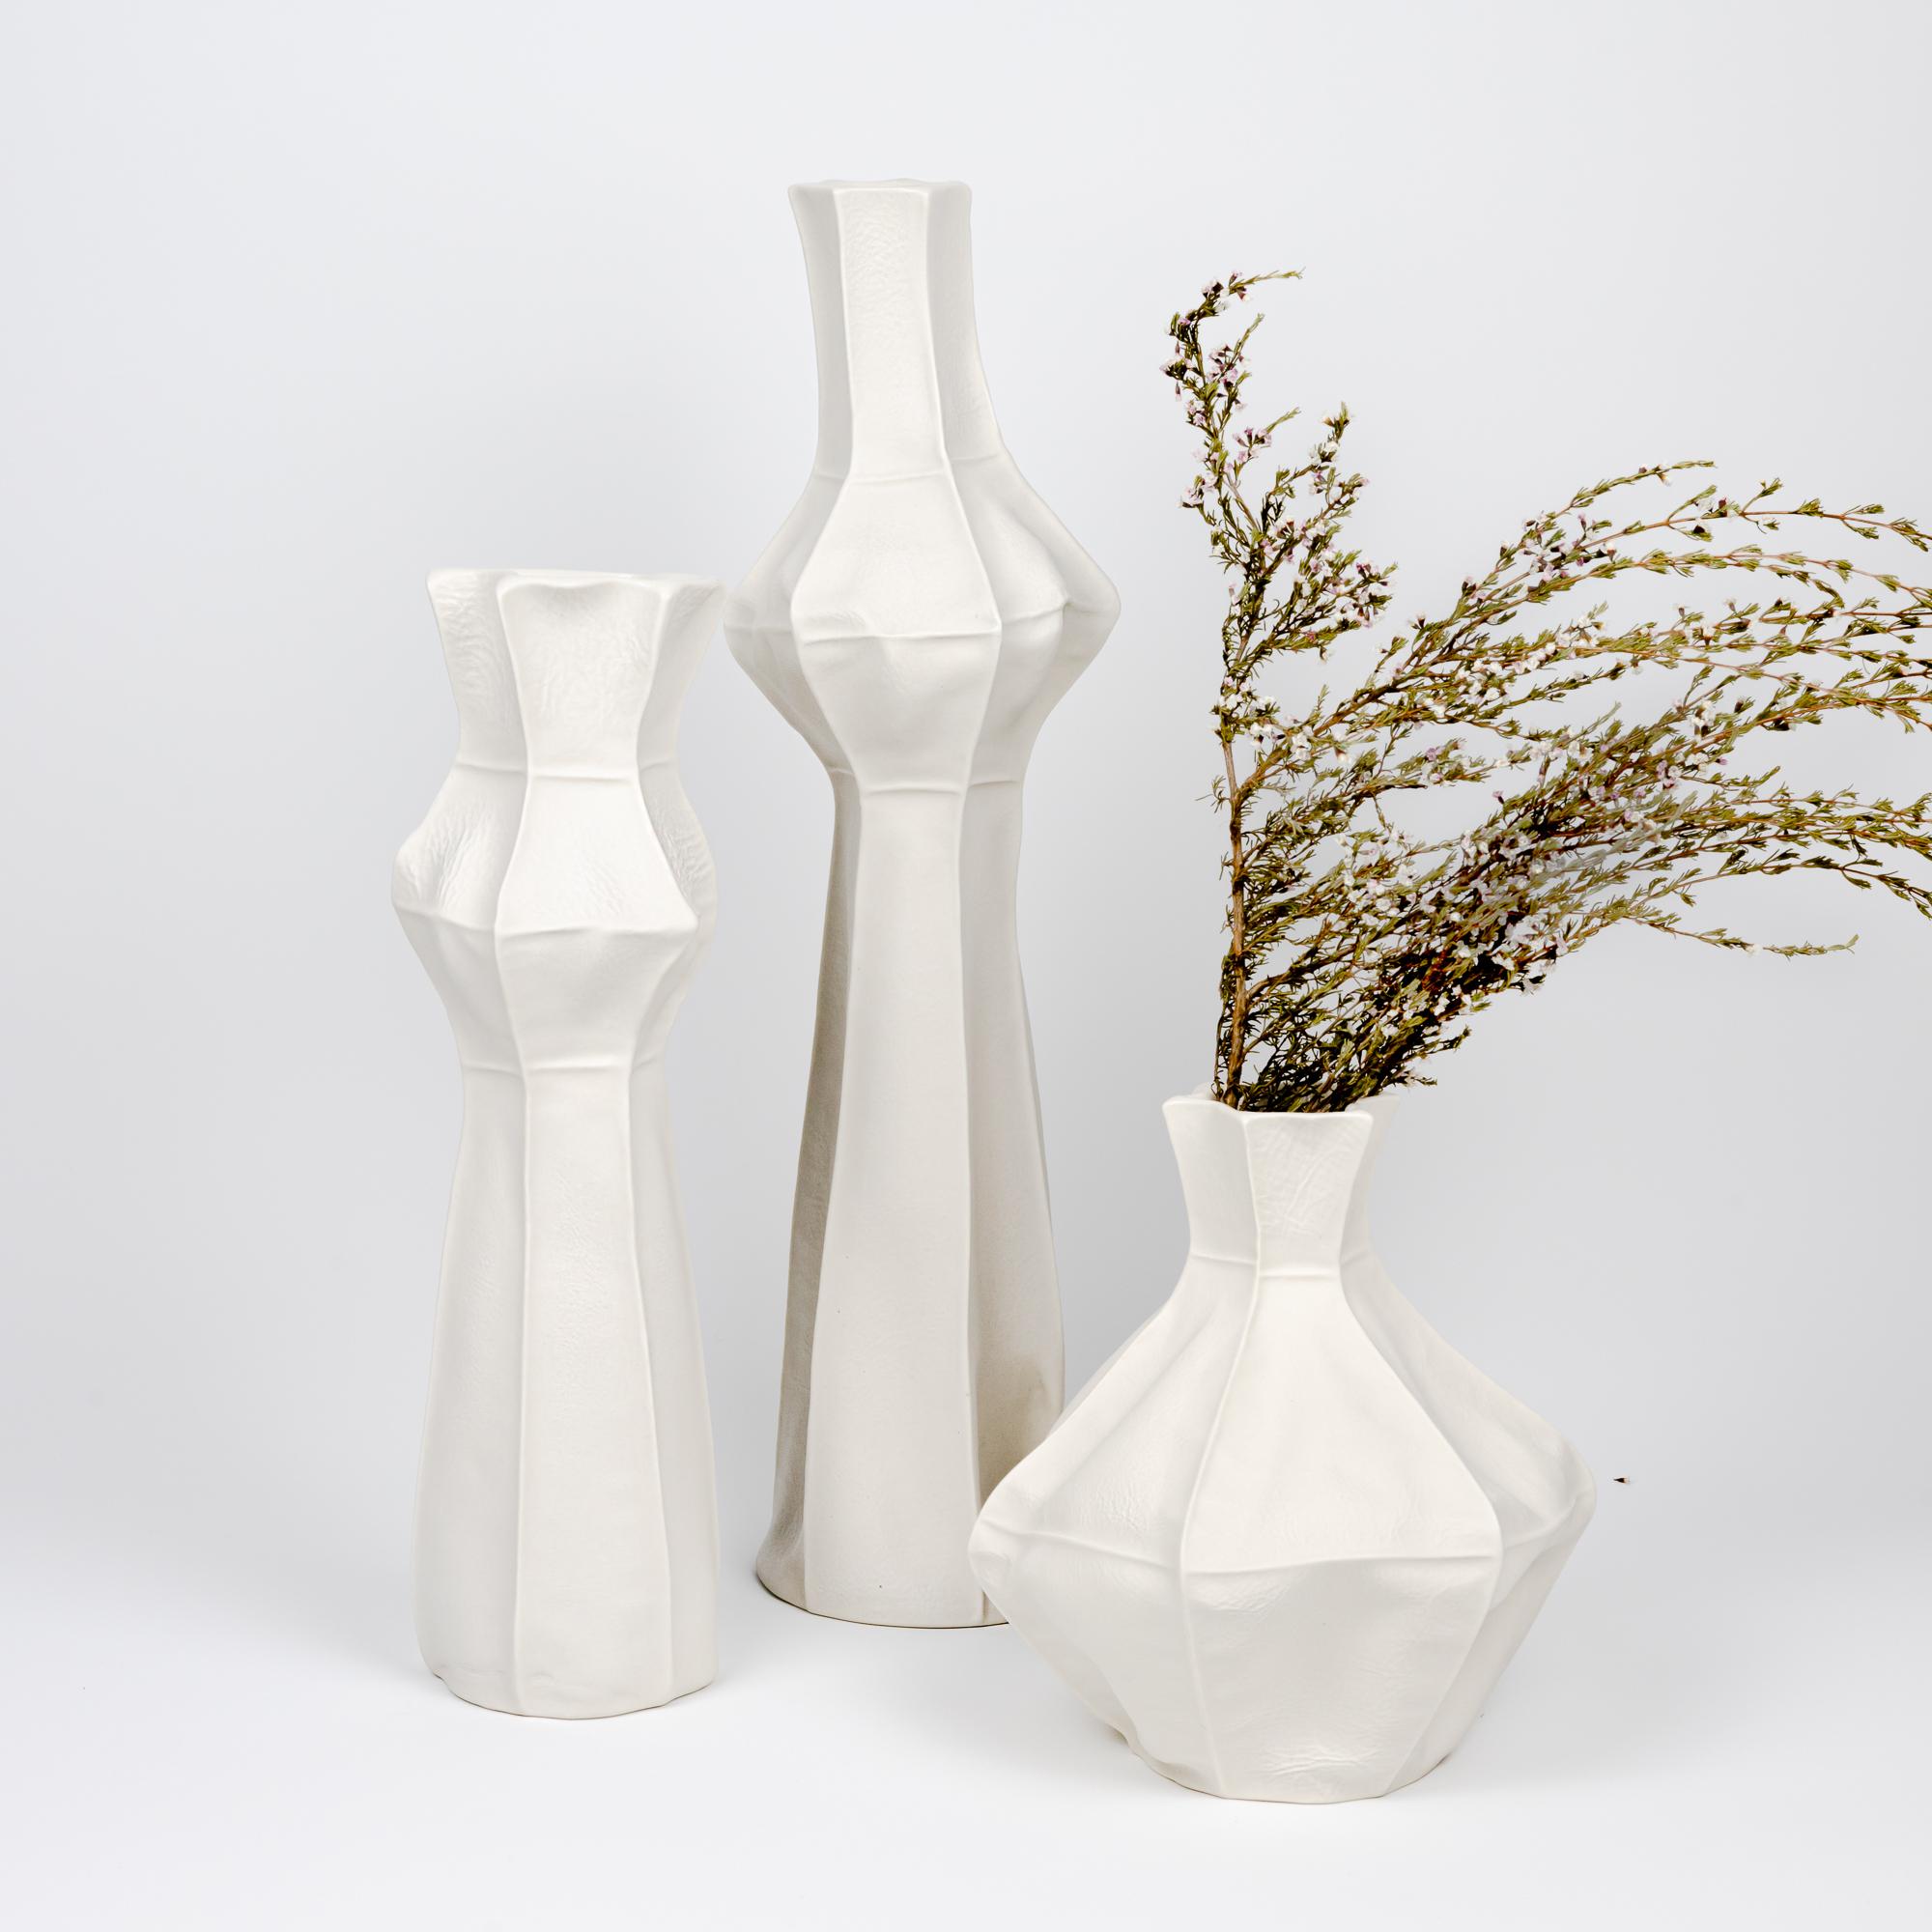 American Set of 3 White Ceramic Kawa Vases, Porcelain flower vases, textured For Sale